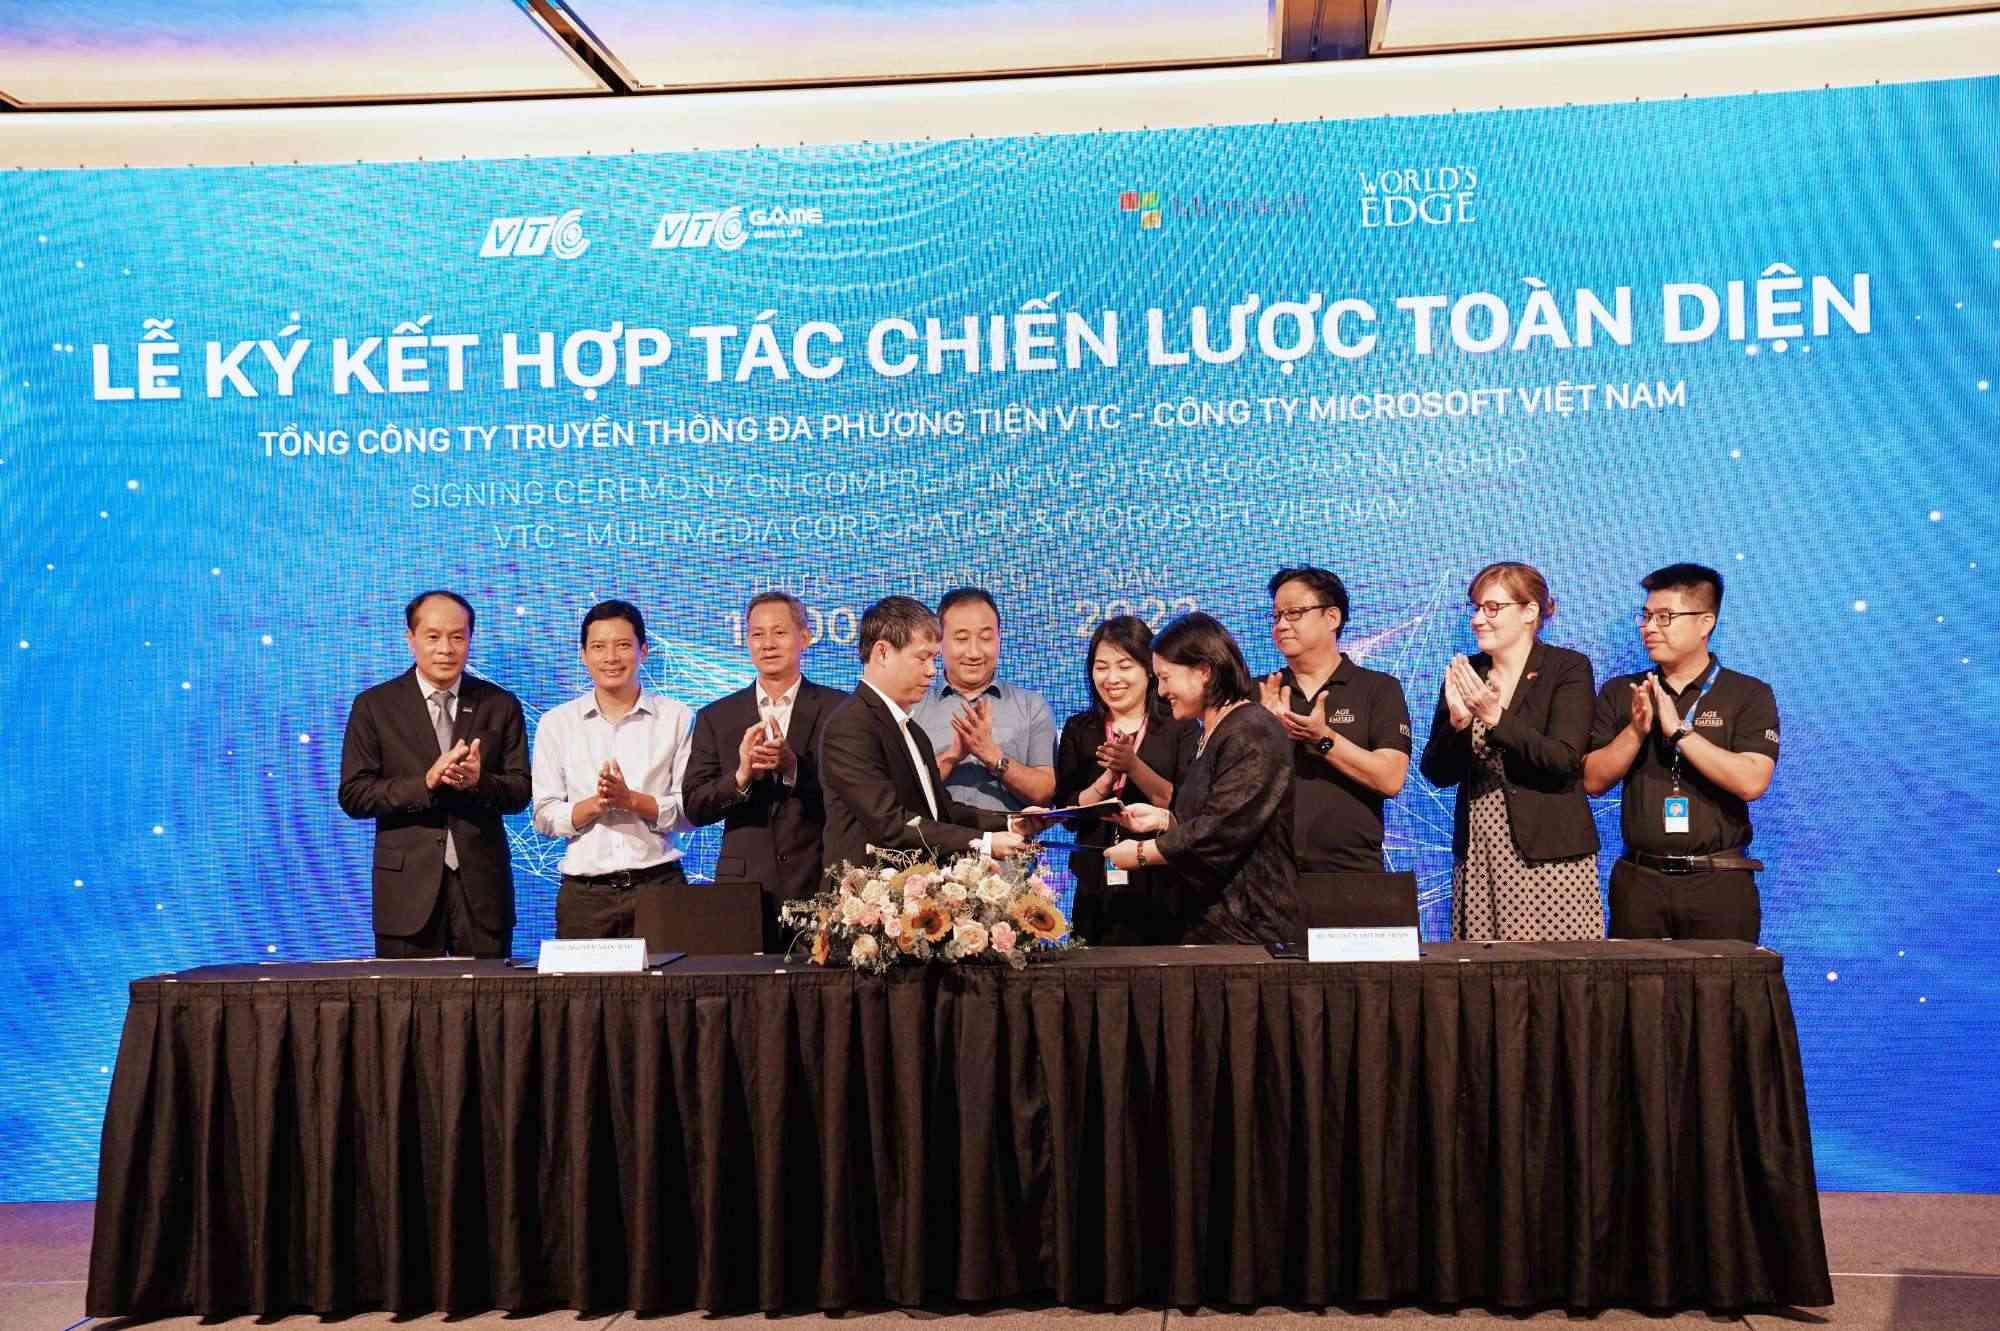 VTC ký kết hợp tác chiến lược với Microsoft, nâng tầm thị trường Esports Việt Nam